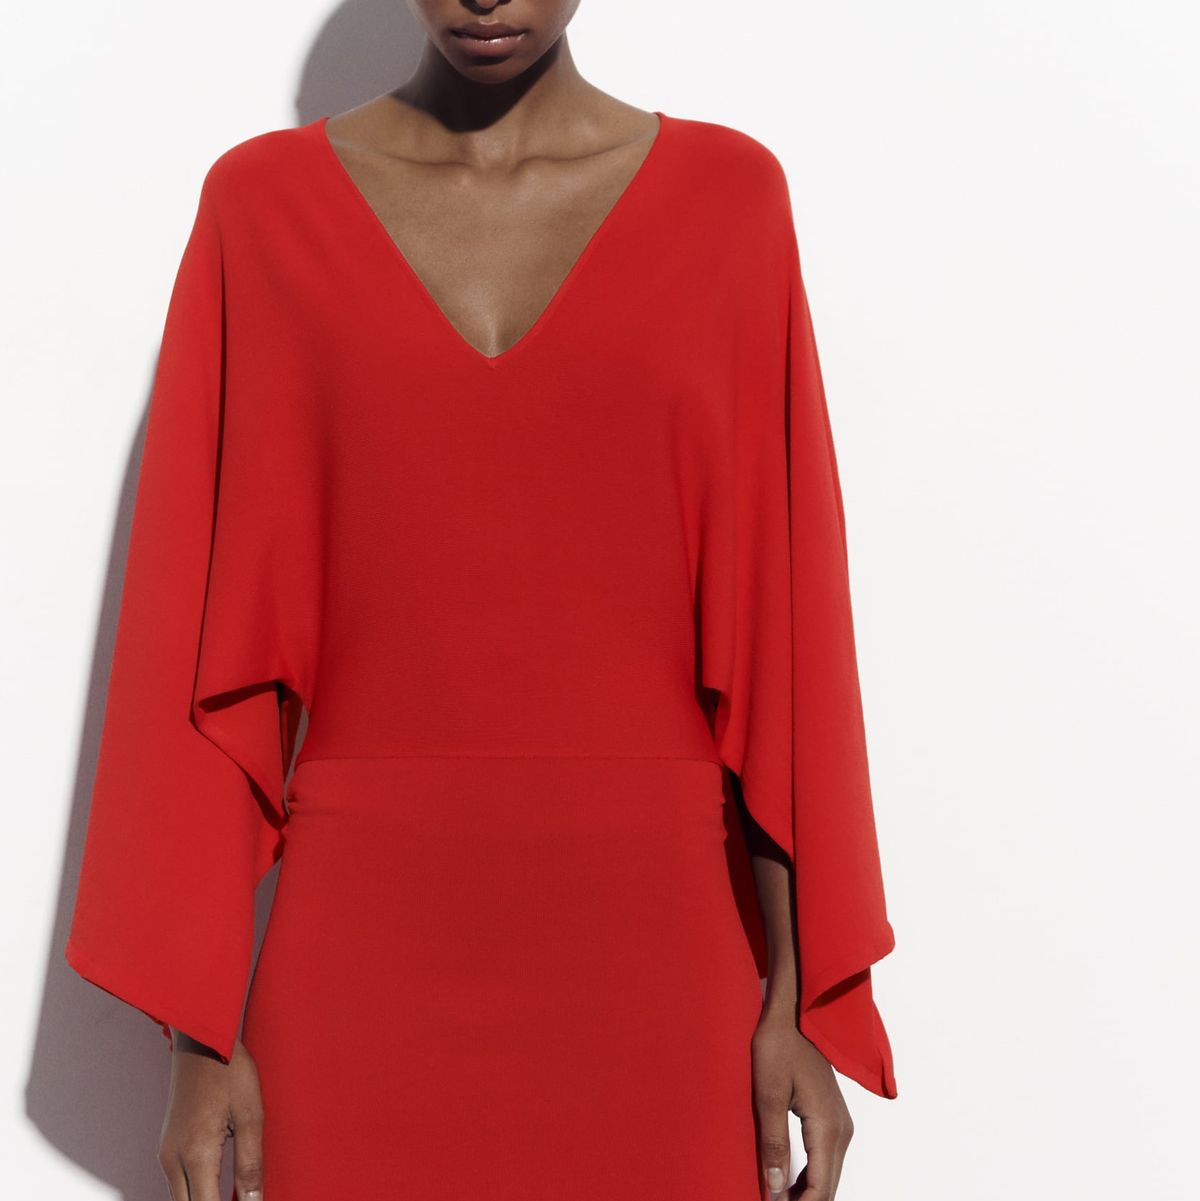 El vestido rojo de invitada de Zara aman las españolas